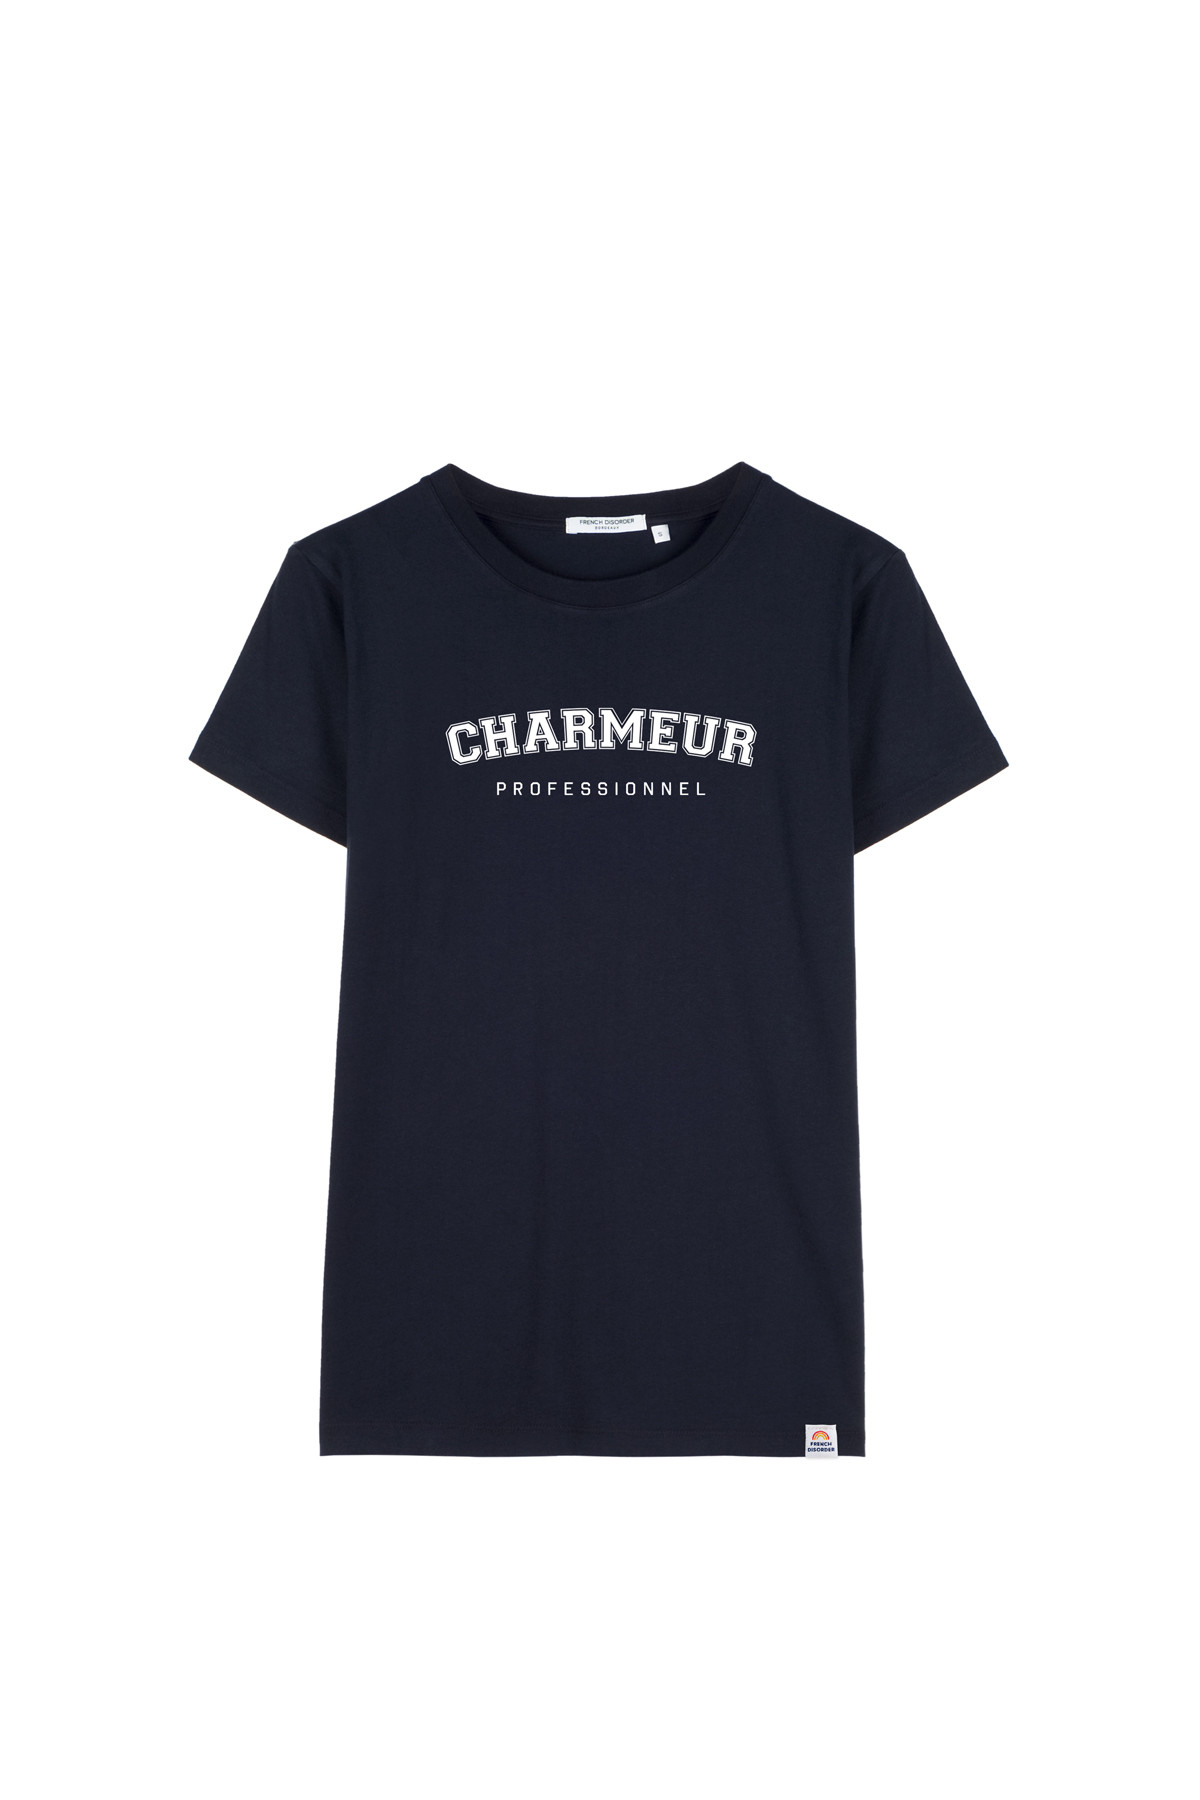 Tshirt CHARMEUR